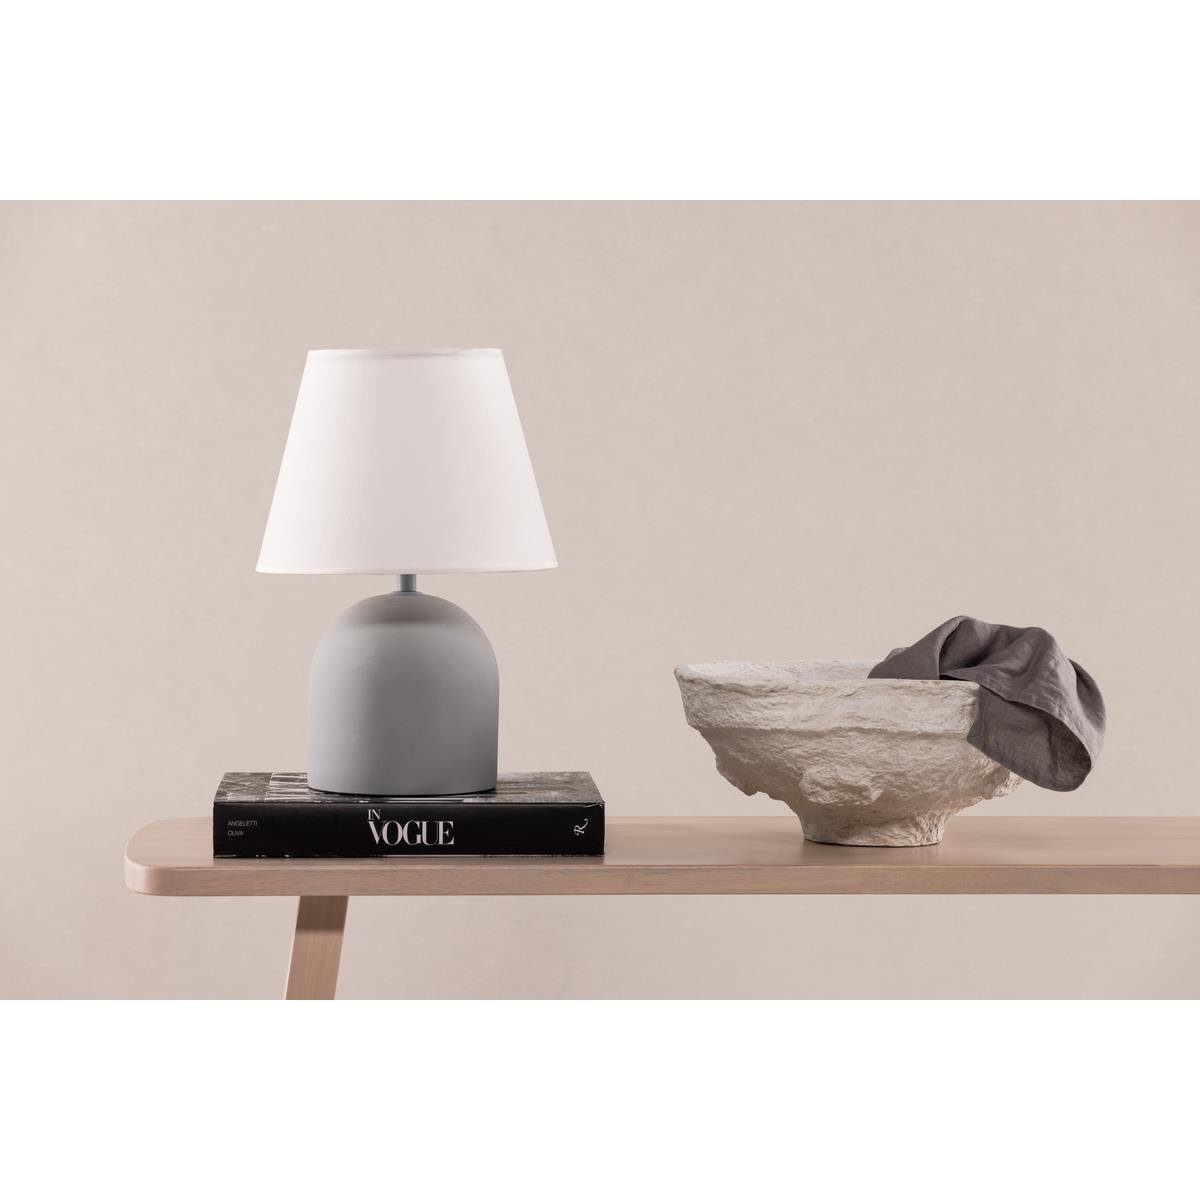 BOURGH Tisch-Tageslichtlampe STYRSÖ Lampe - 37cm weiss Zischlampe modernem Design, - in Nachttischlampe